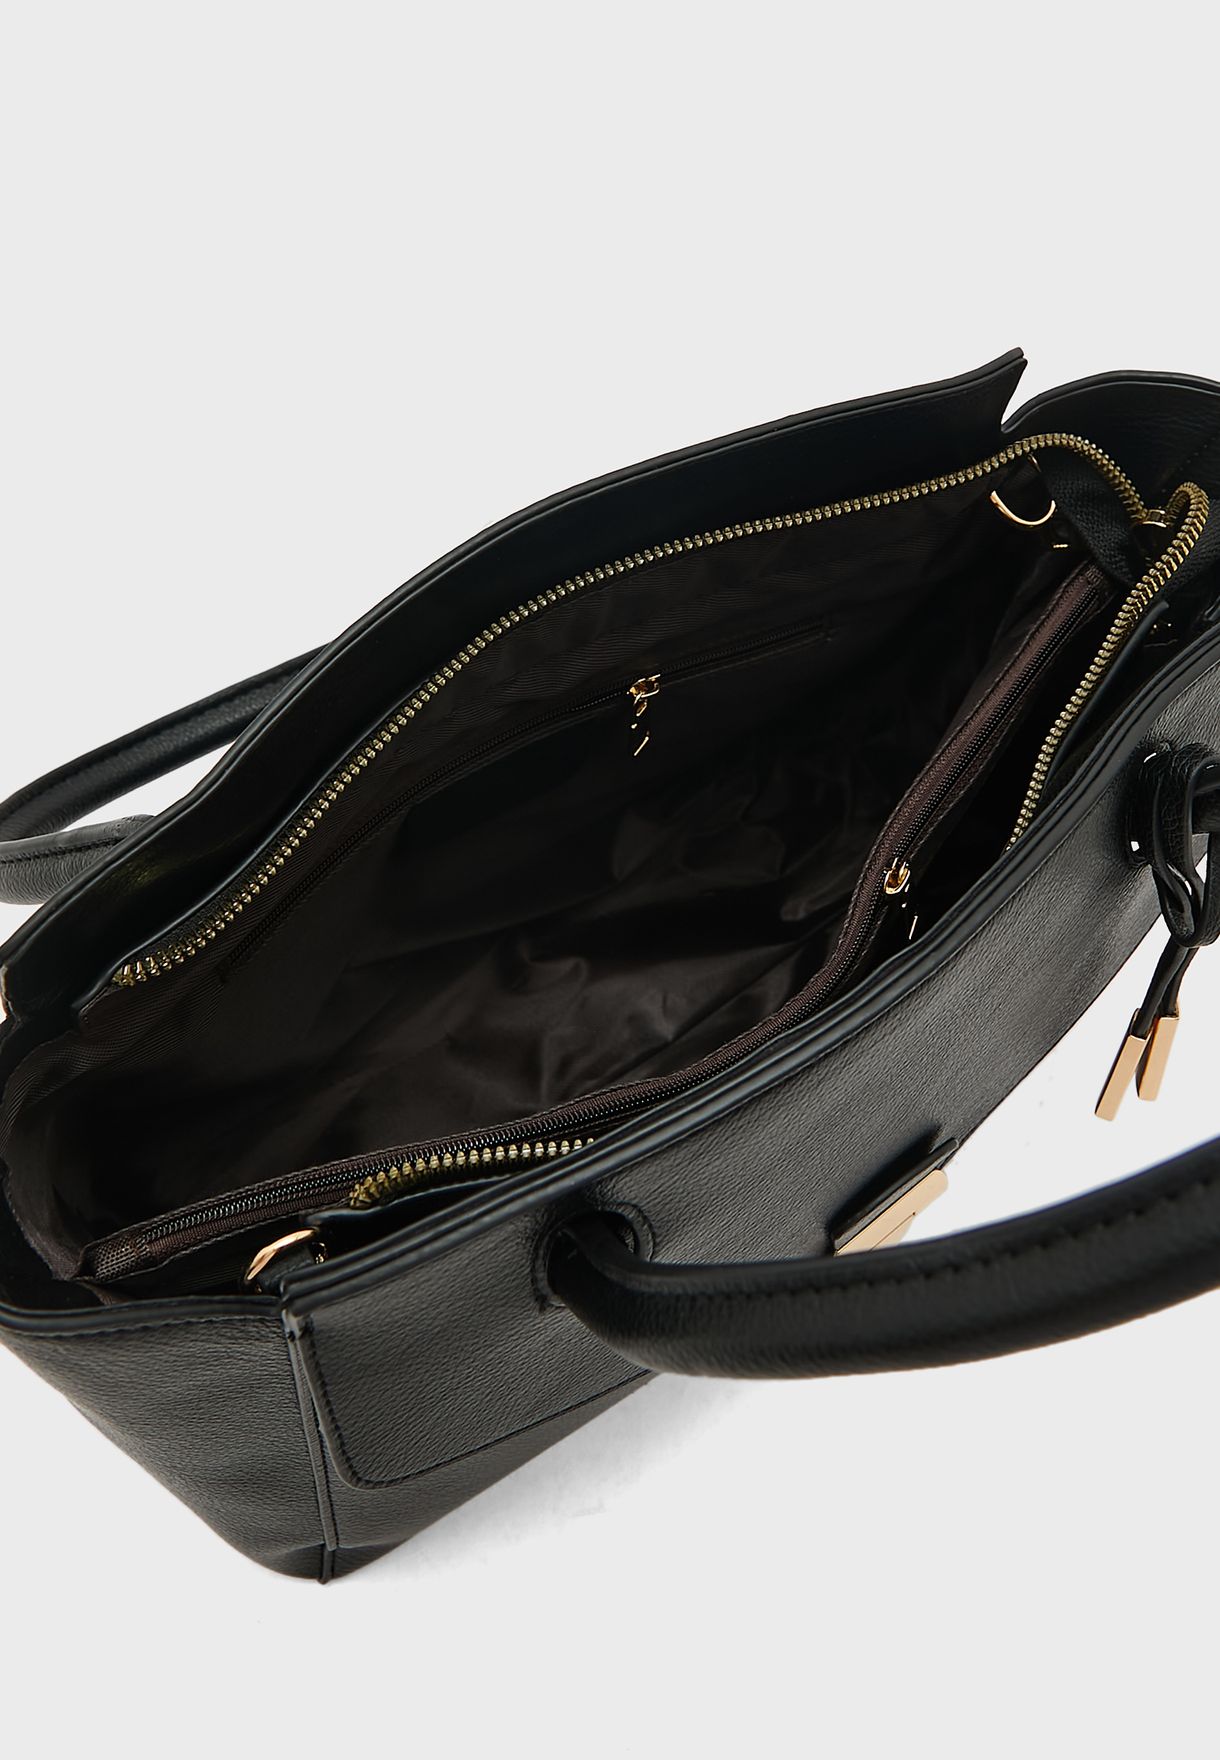 Top Handle Handbag With Clasp